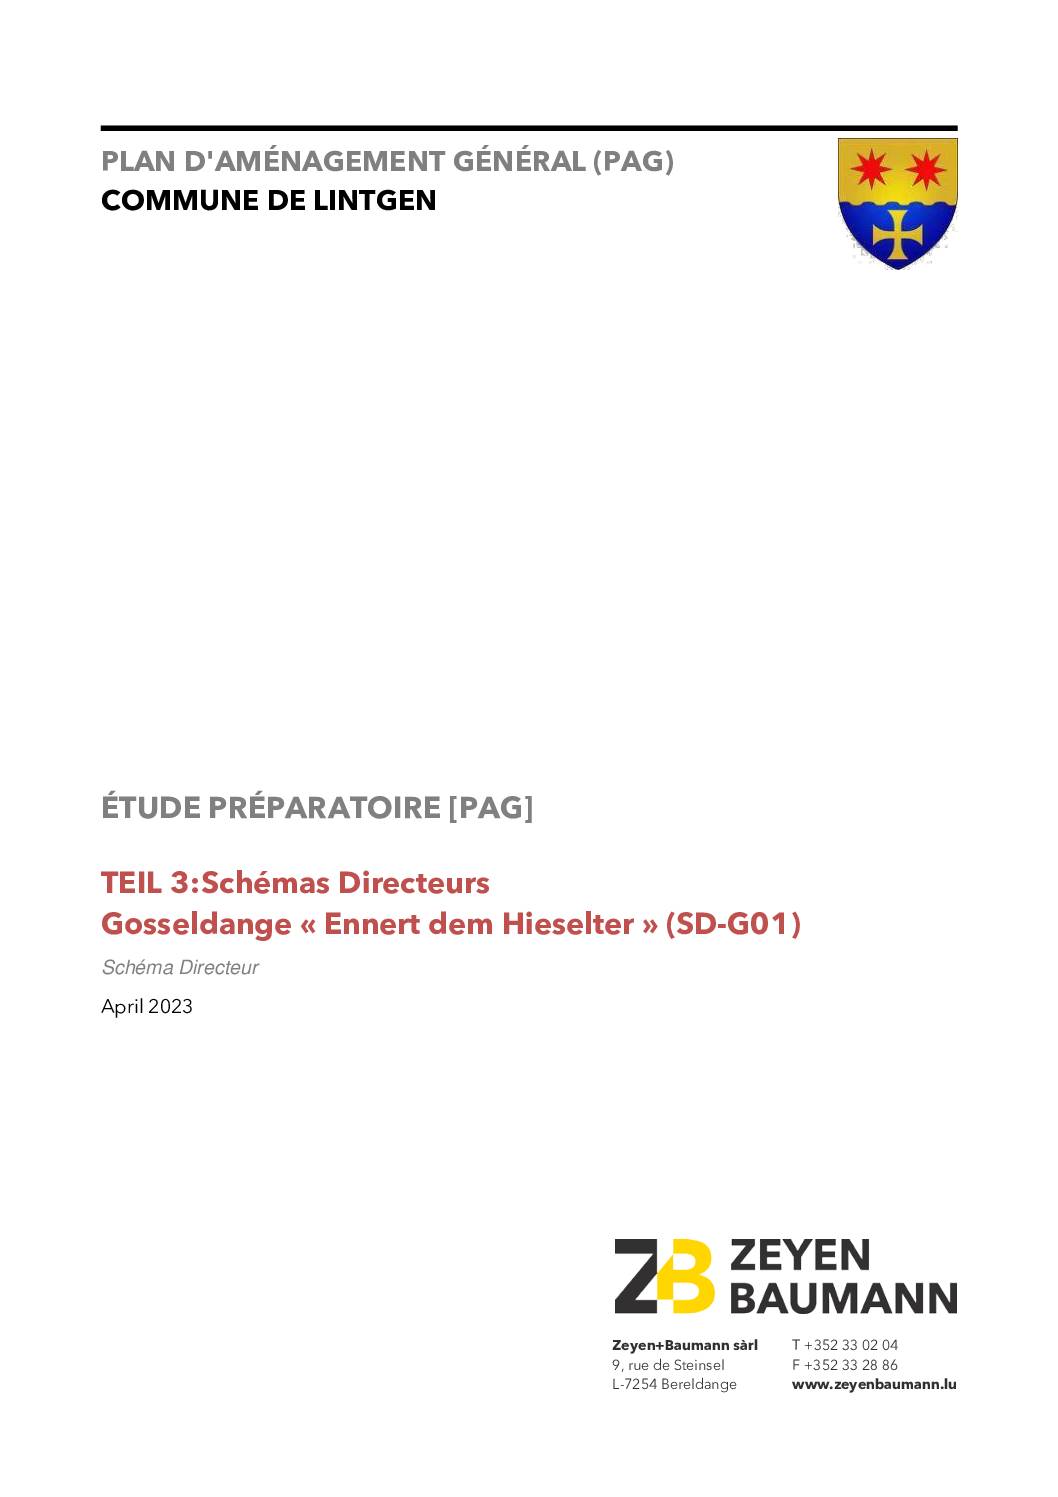 Schémas directeurs - Gosseldange « Ennert dem Hieselter » (SD-G01)